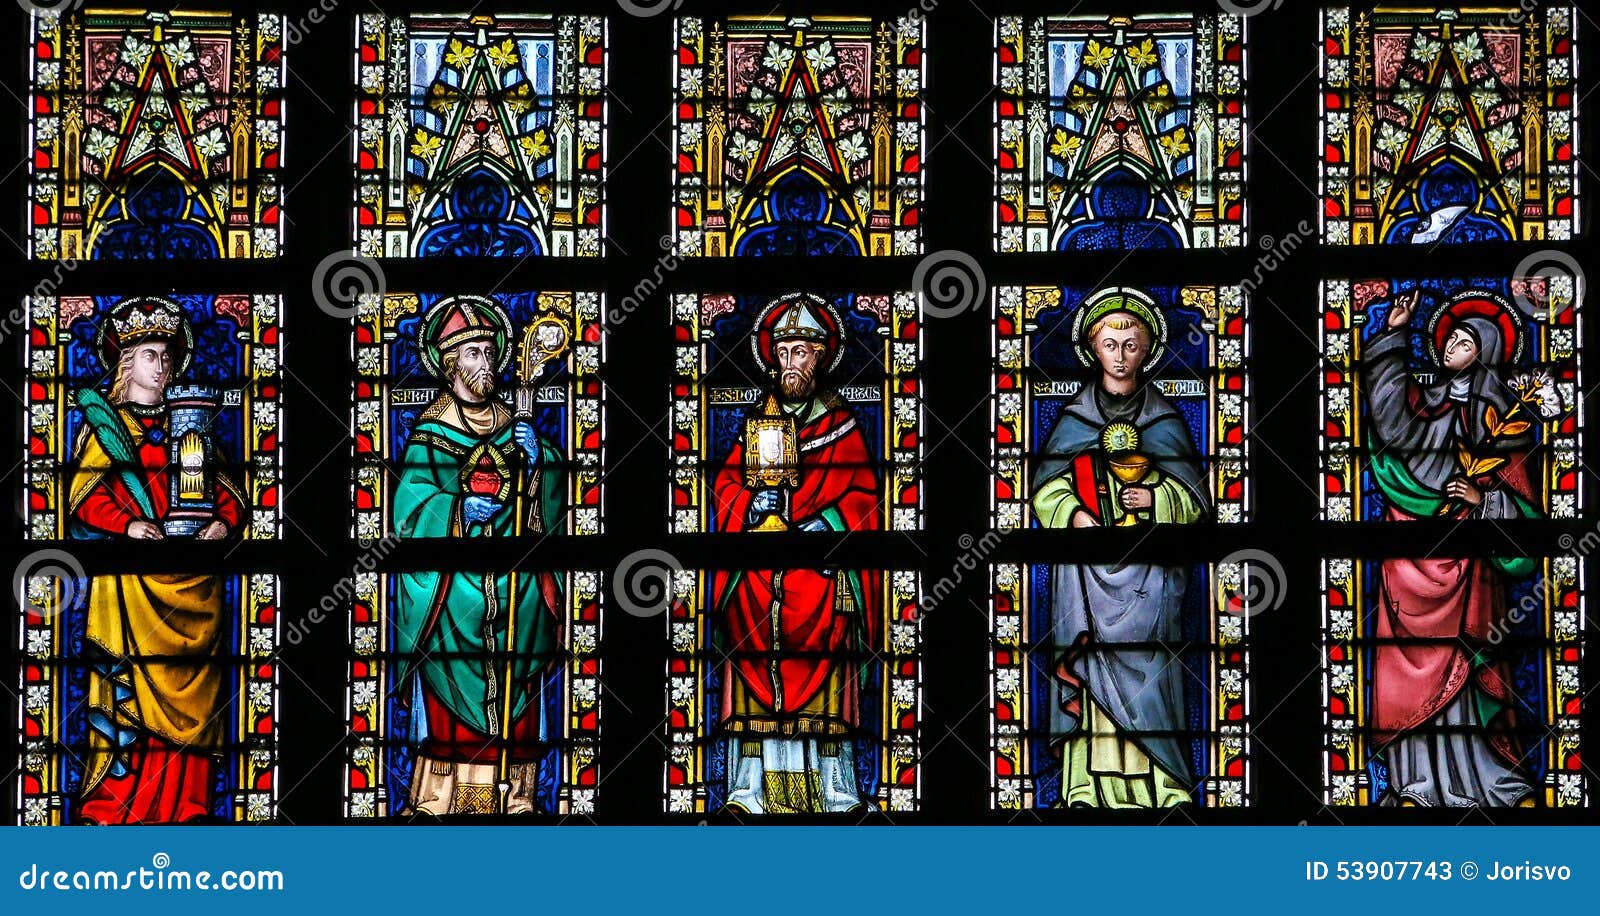 stained glass window depicting catholic saints